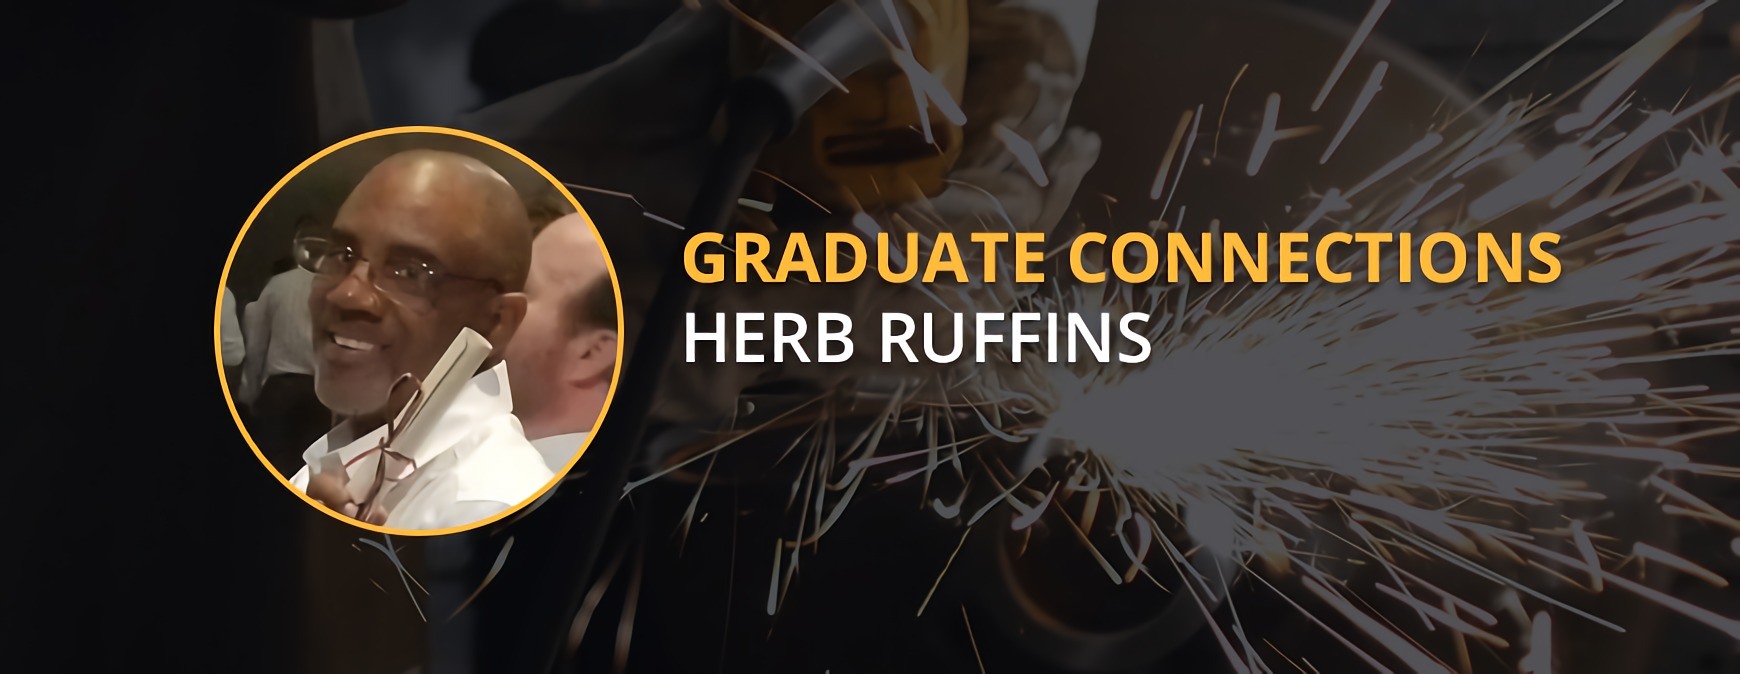 Conexiones de graduados de Herb Ruffins